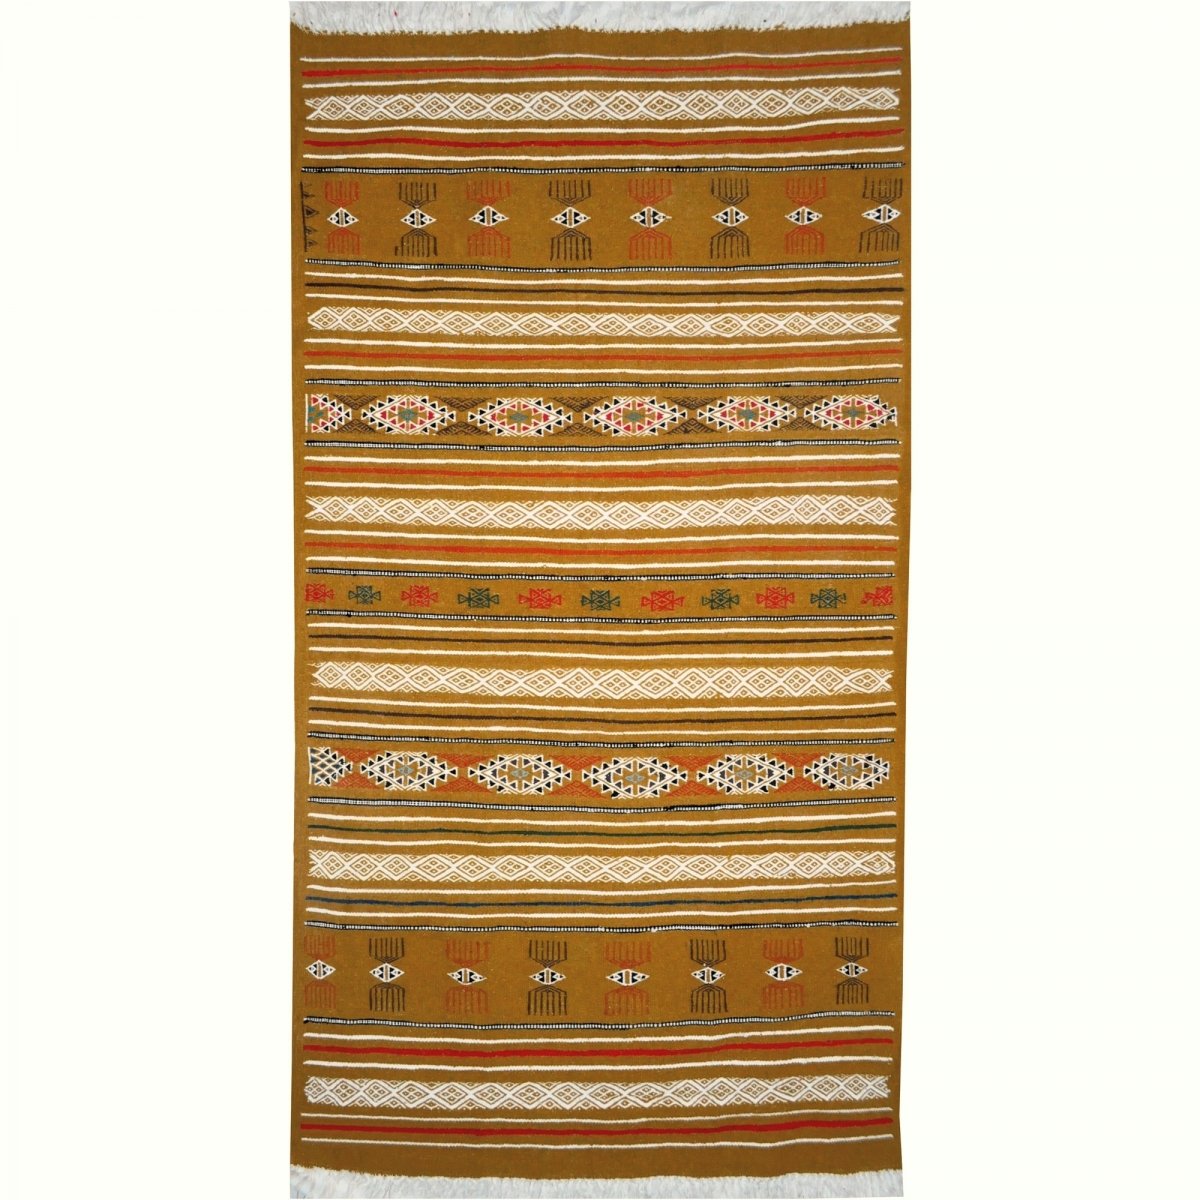 Tapis berbère Tapis Kilim Lamta 100x200 Jaune ocre (Tissé main, Laine, Tunisie) Tapis kilim tunisien style tapis marocain. Tapis